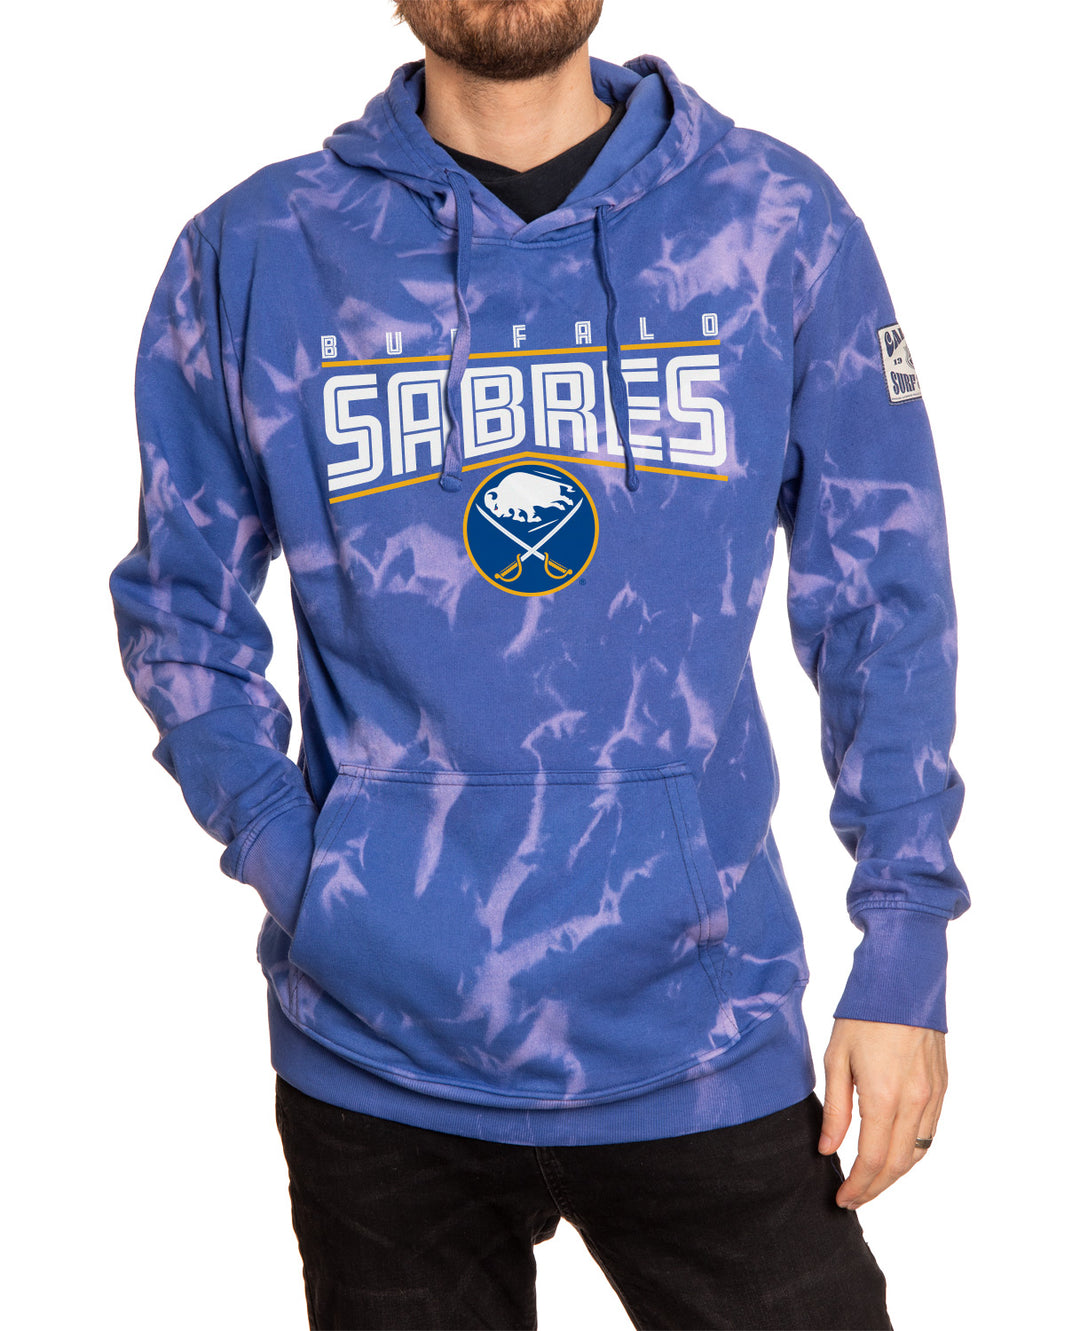 Buffalo Sabres NHL Surf and Skate Unisex Crystal Tie Dye Hoodie